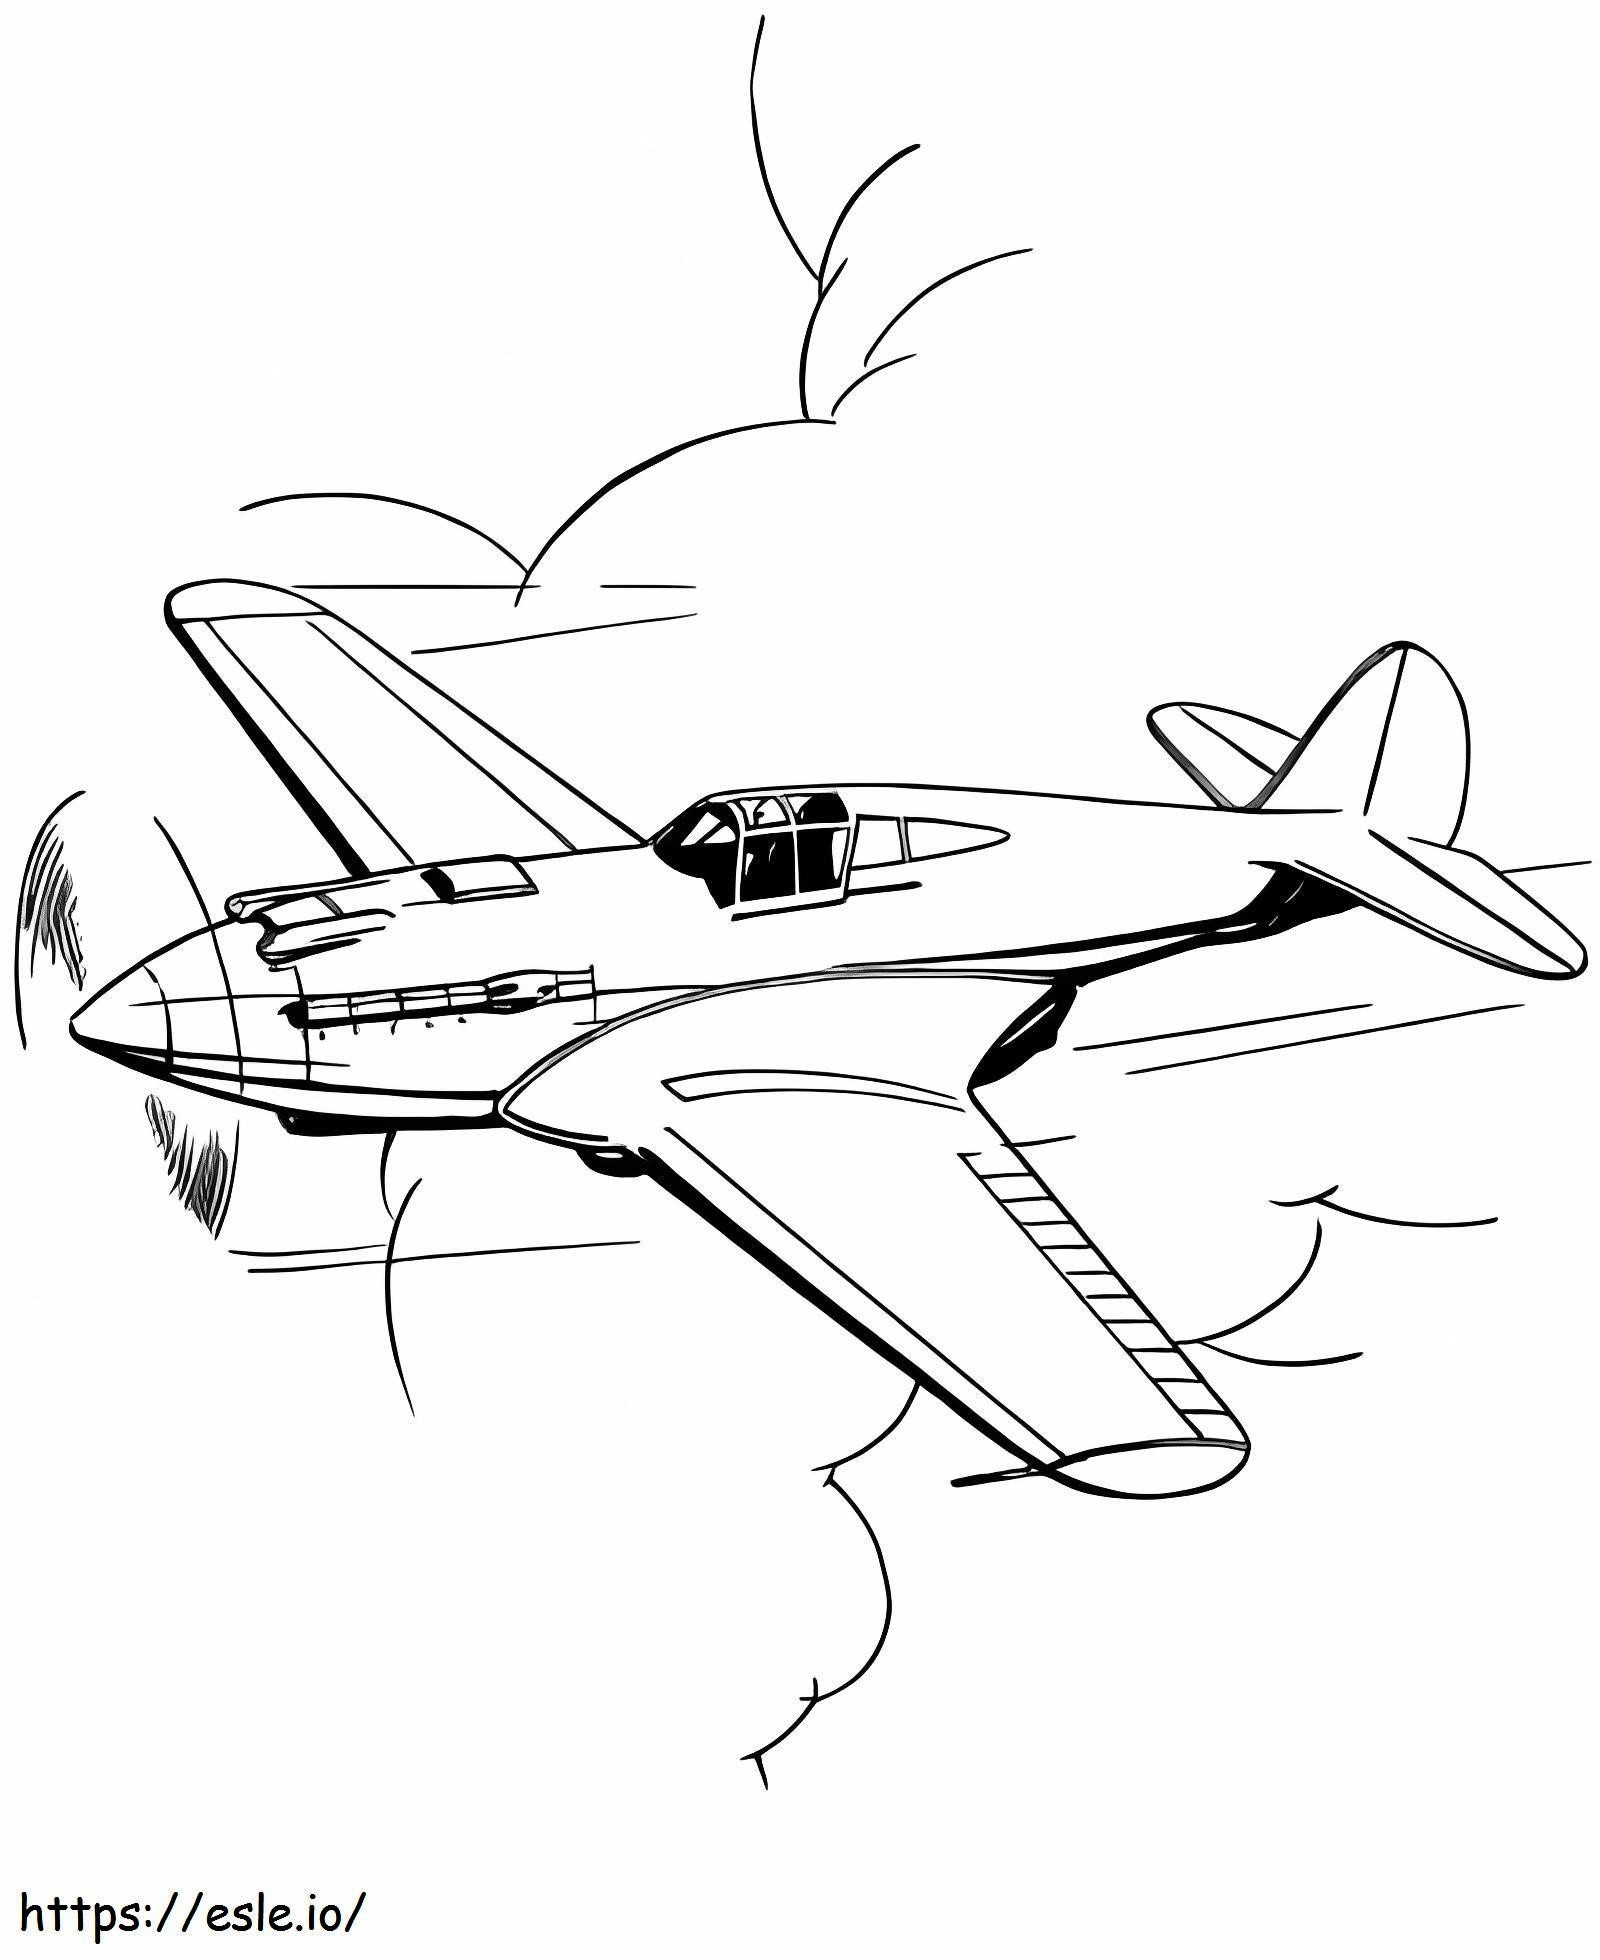 Einfache Flugzeuge ausmalbilder